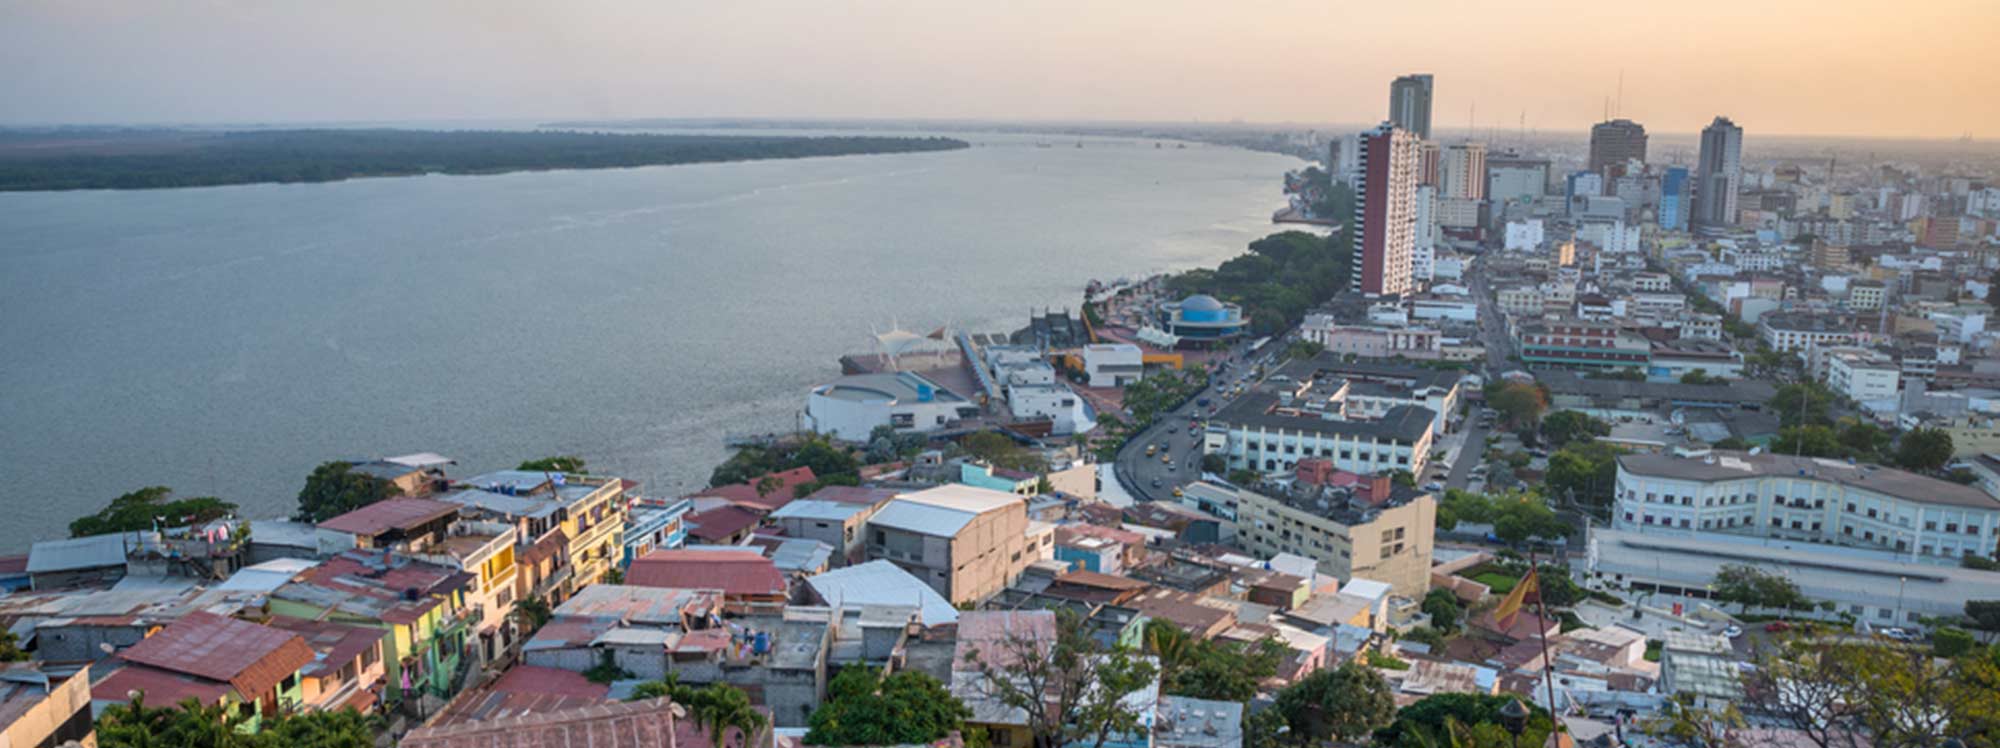 Un recorrido histórico de la fundación de Guayaquil en “Fiestas Julianas”